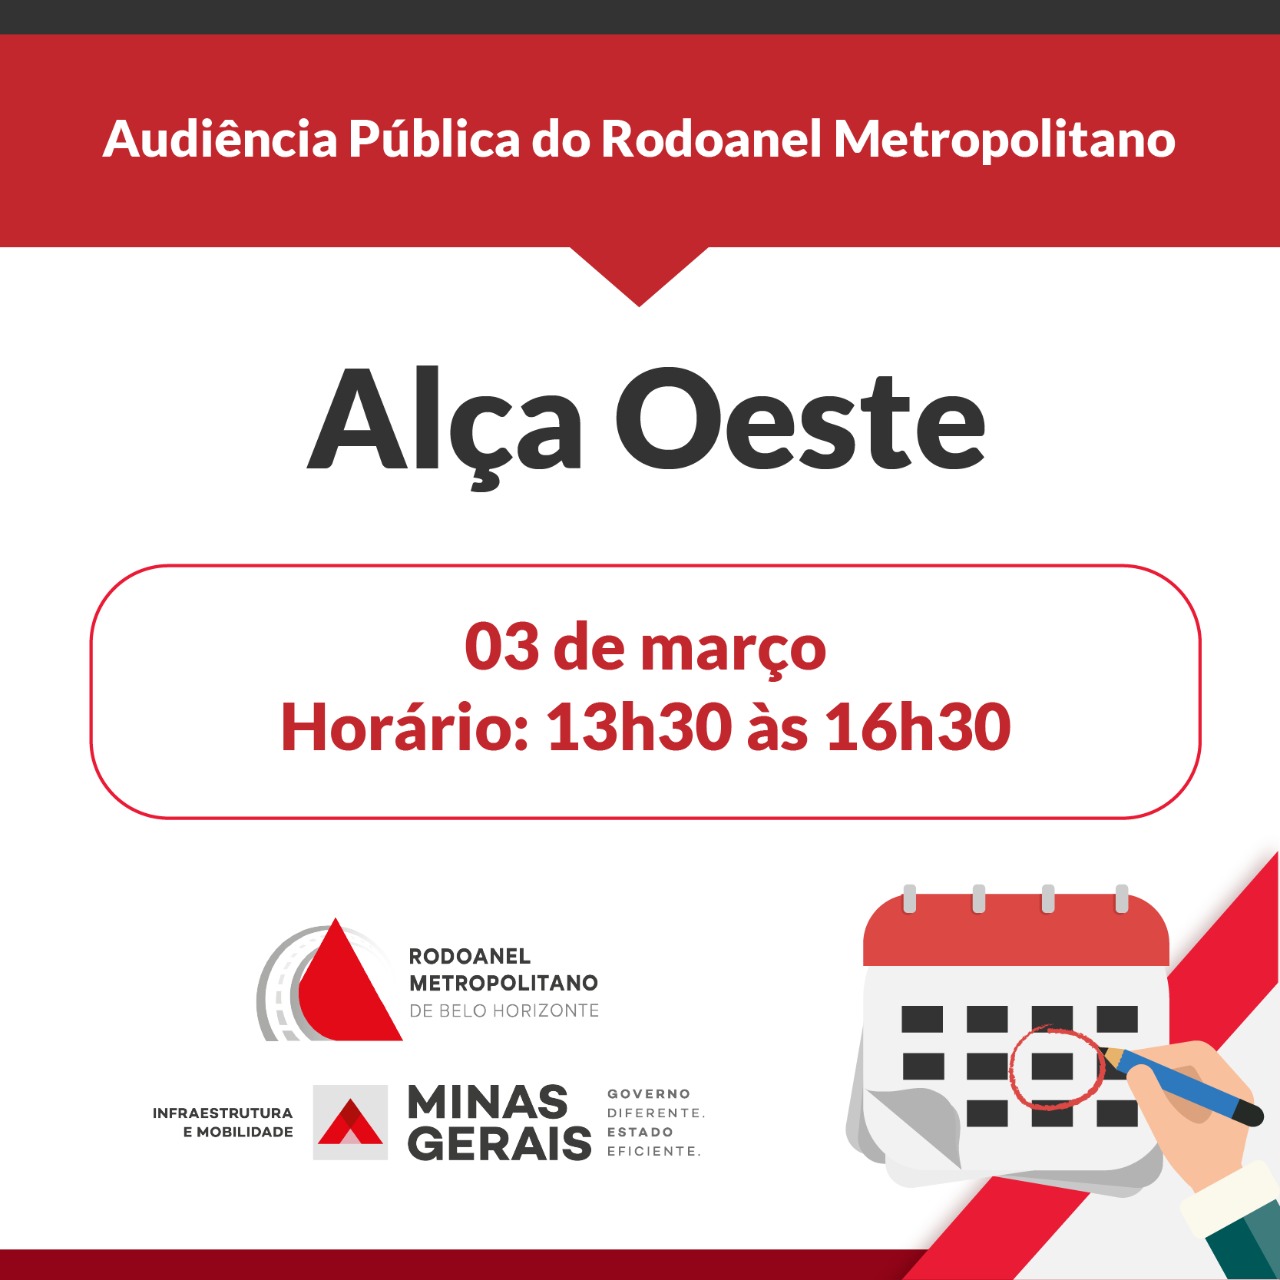 Segunda Audiência Pública do Rodoanel Metropolitano será realizada nesta quarta-feira (03/3)